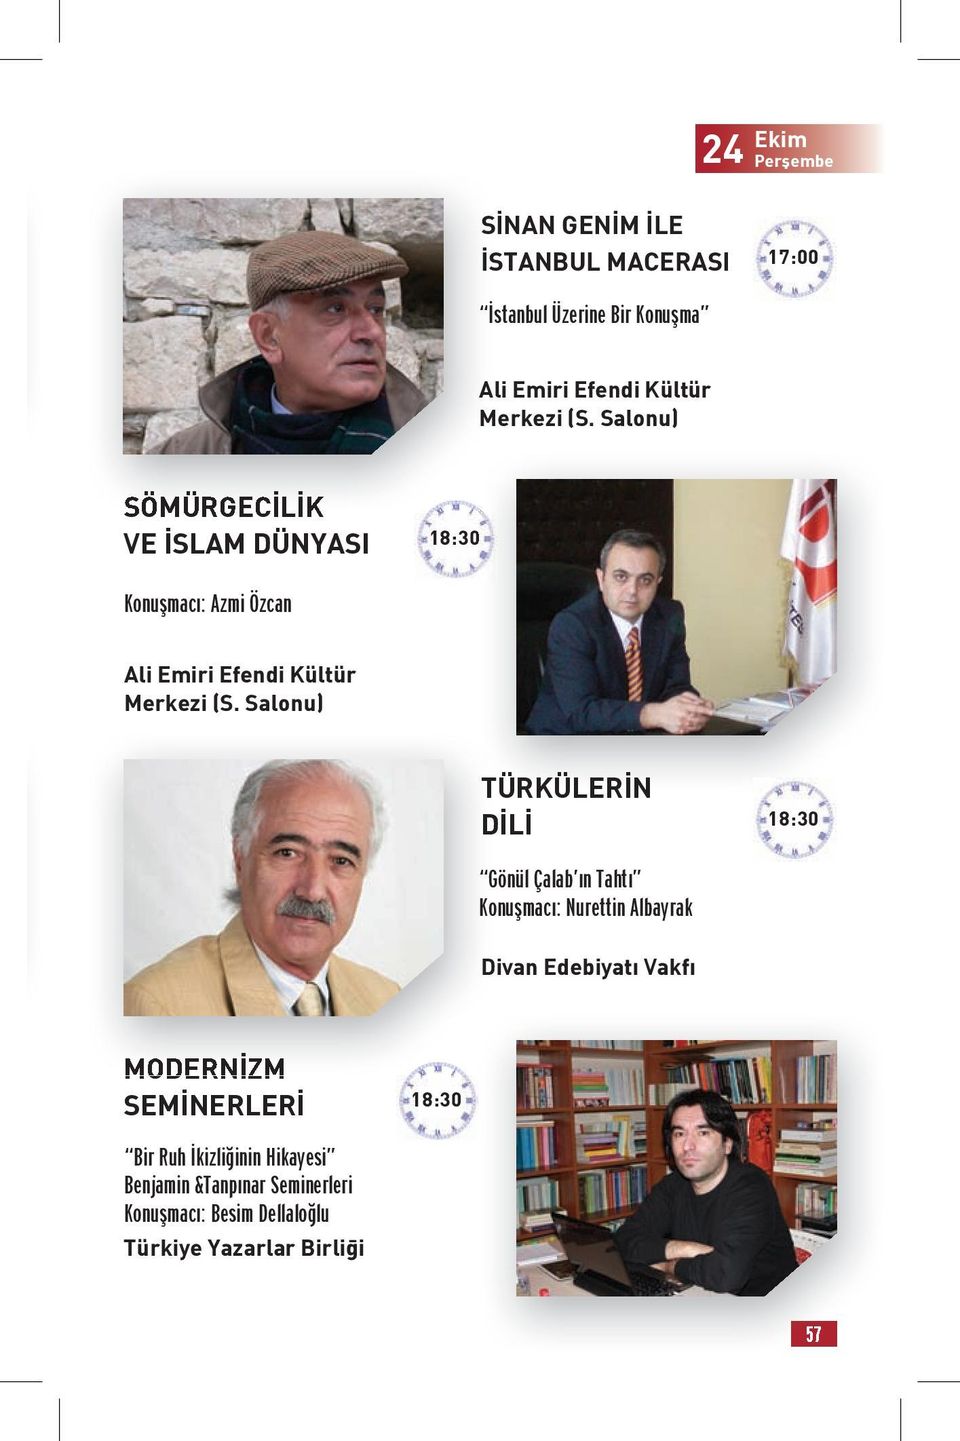 Konuşmacı: Nurettin Albayrak Divan Edebiyatı Vakfı MODERNİZM SEMİNERLERİ Bir Ruh